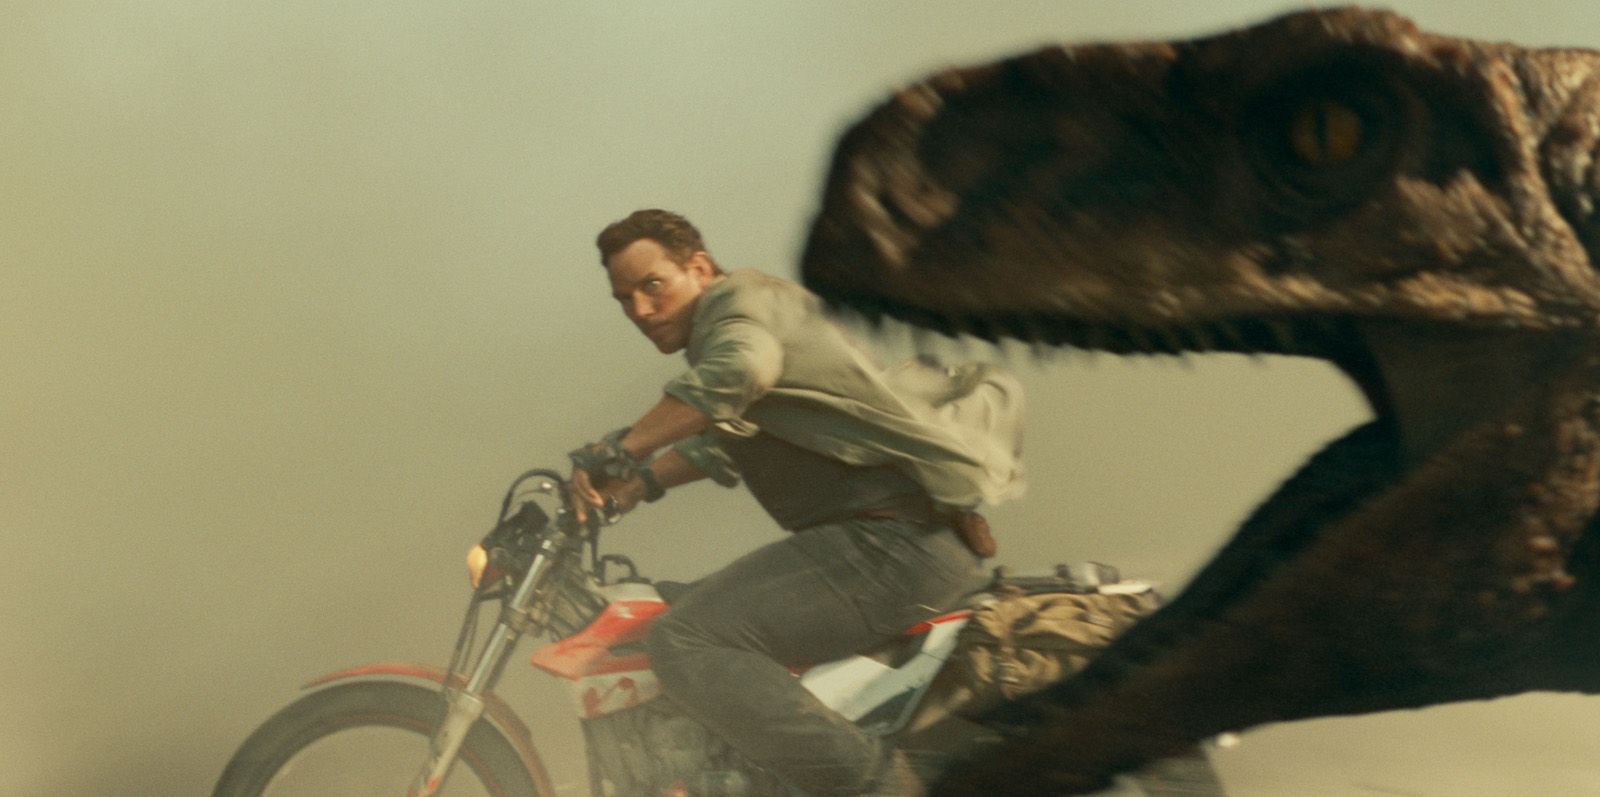 Jurassic World 3: Nova foto mostra dinossauro com visual mais realista